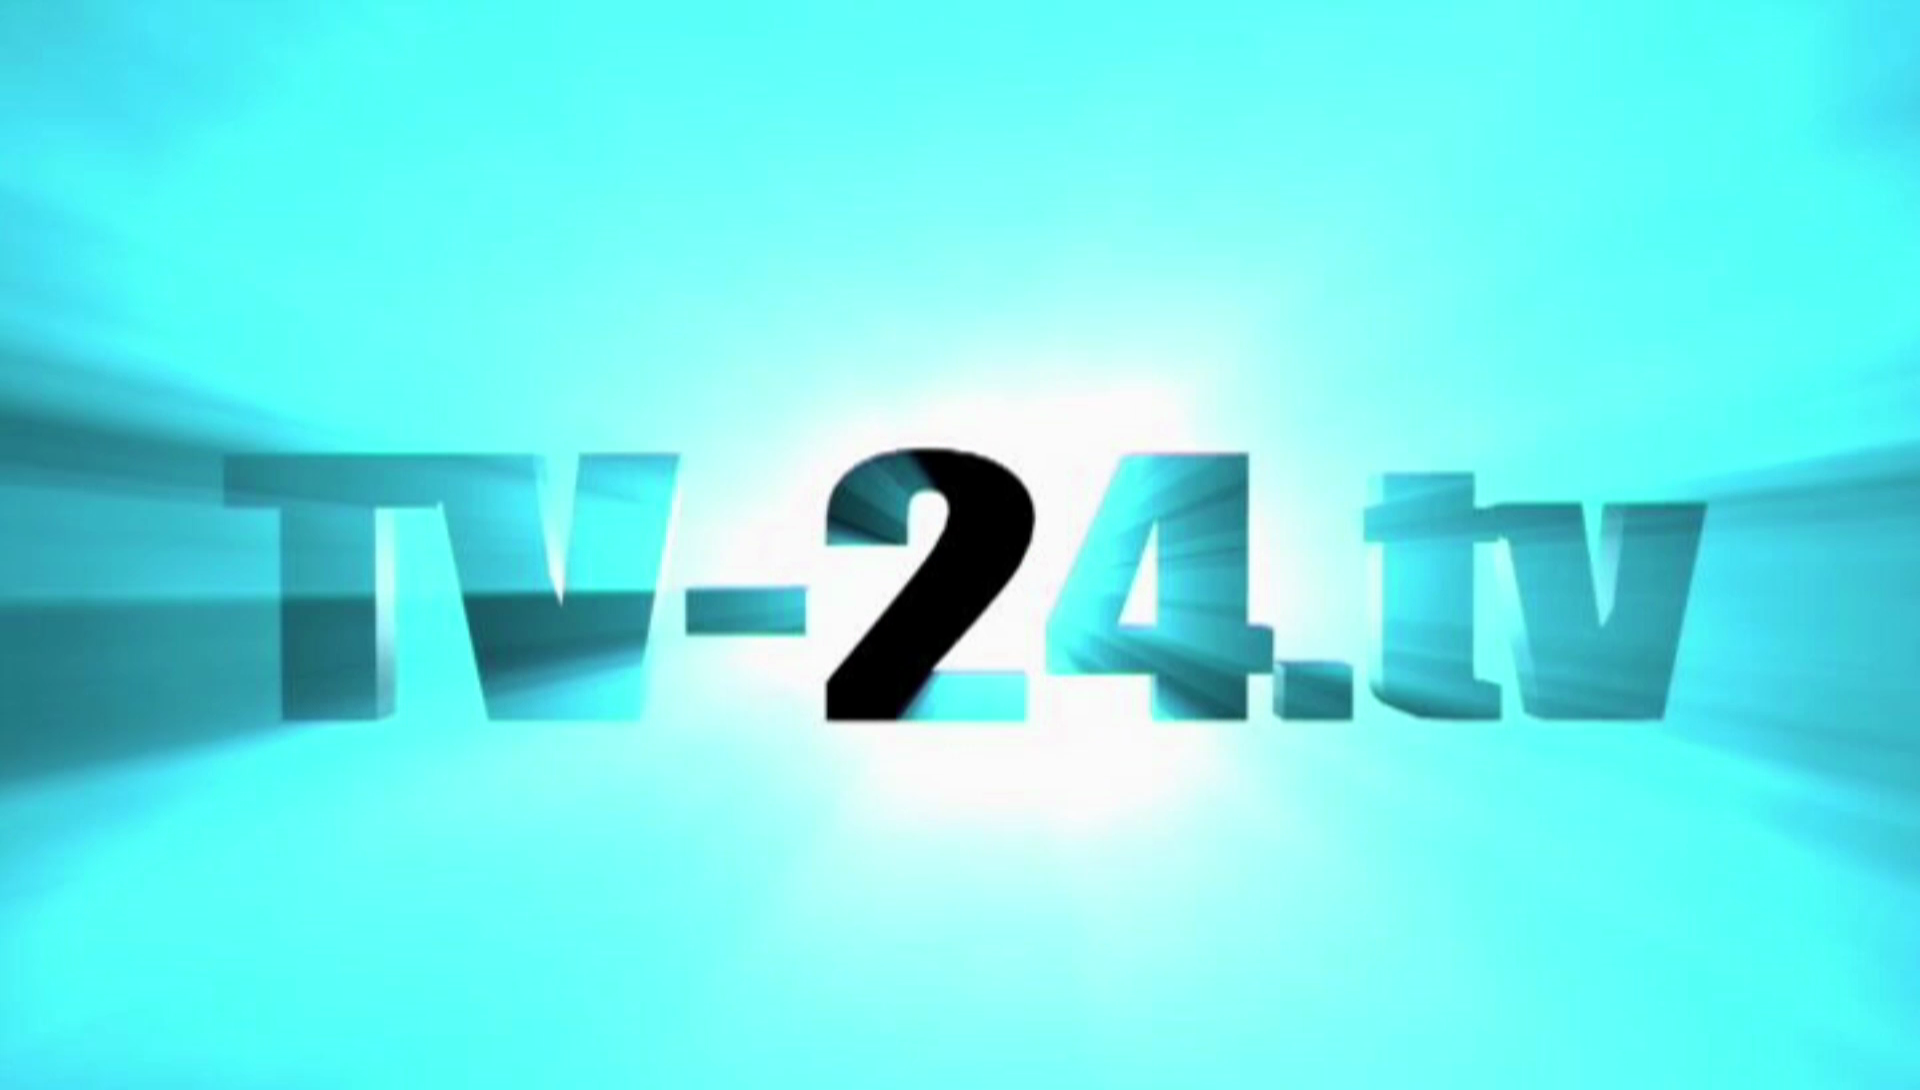 TV-24